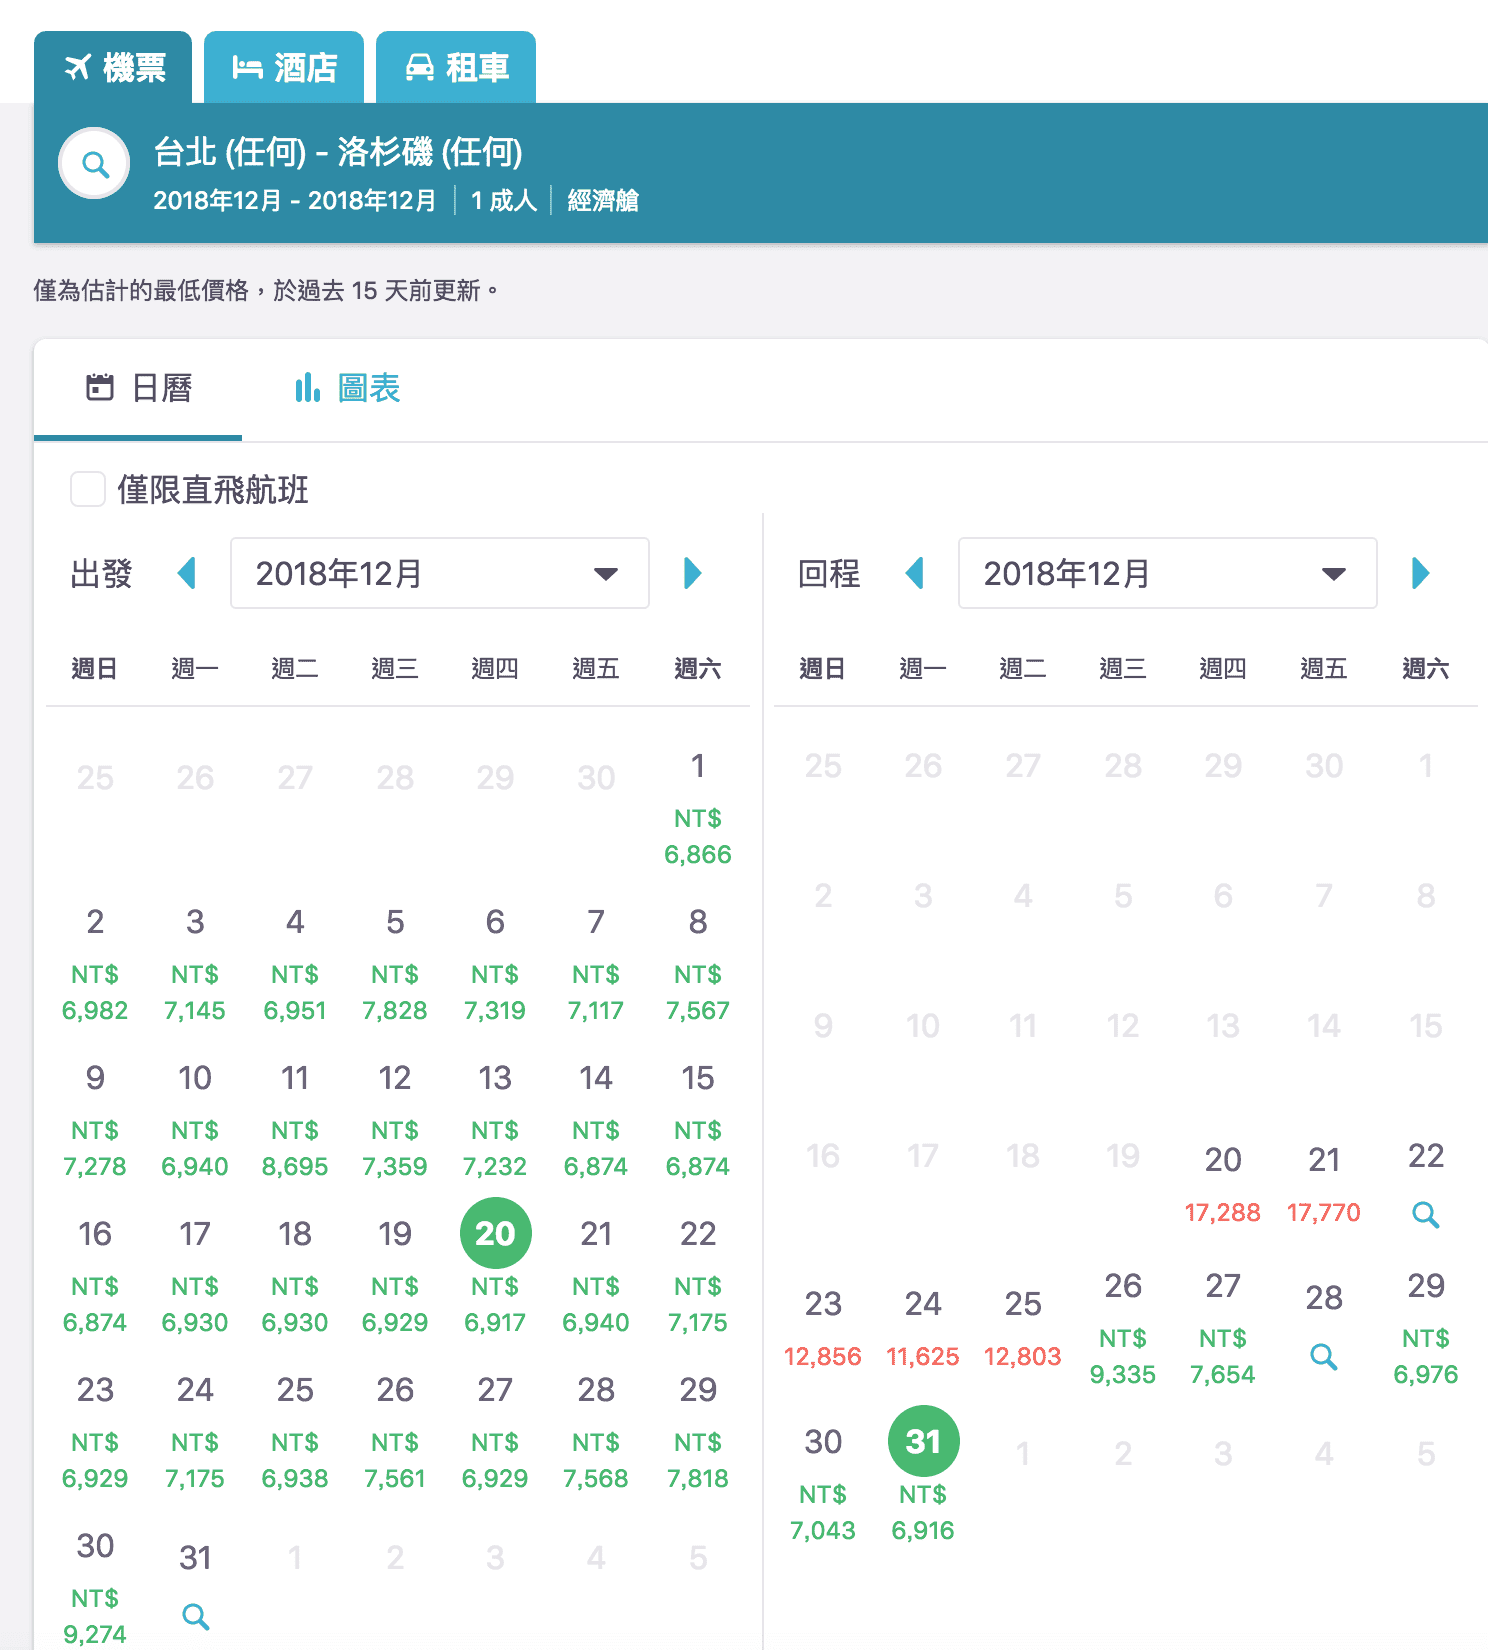 香港航空美洲線超級促銷，台北出發最低13K起來回～（含聖誕跨年）（查票：107.9.29）